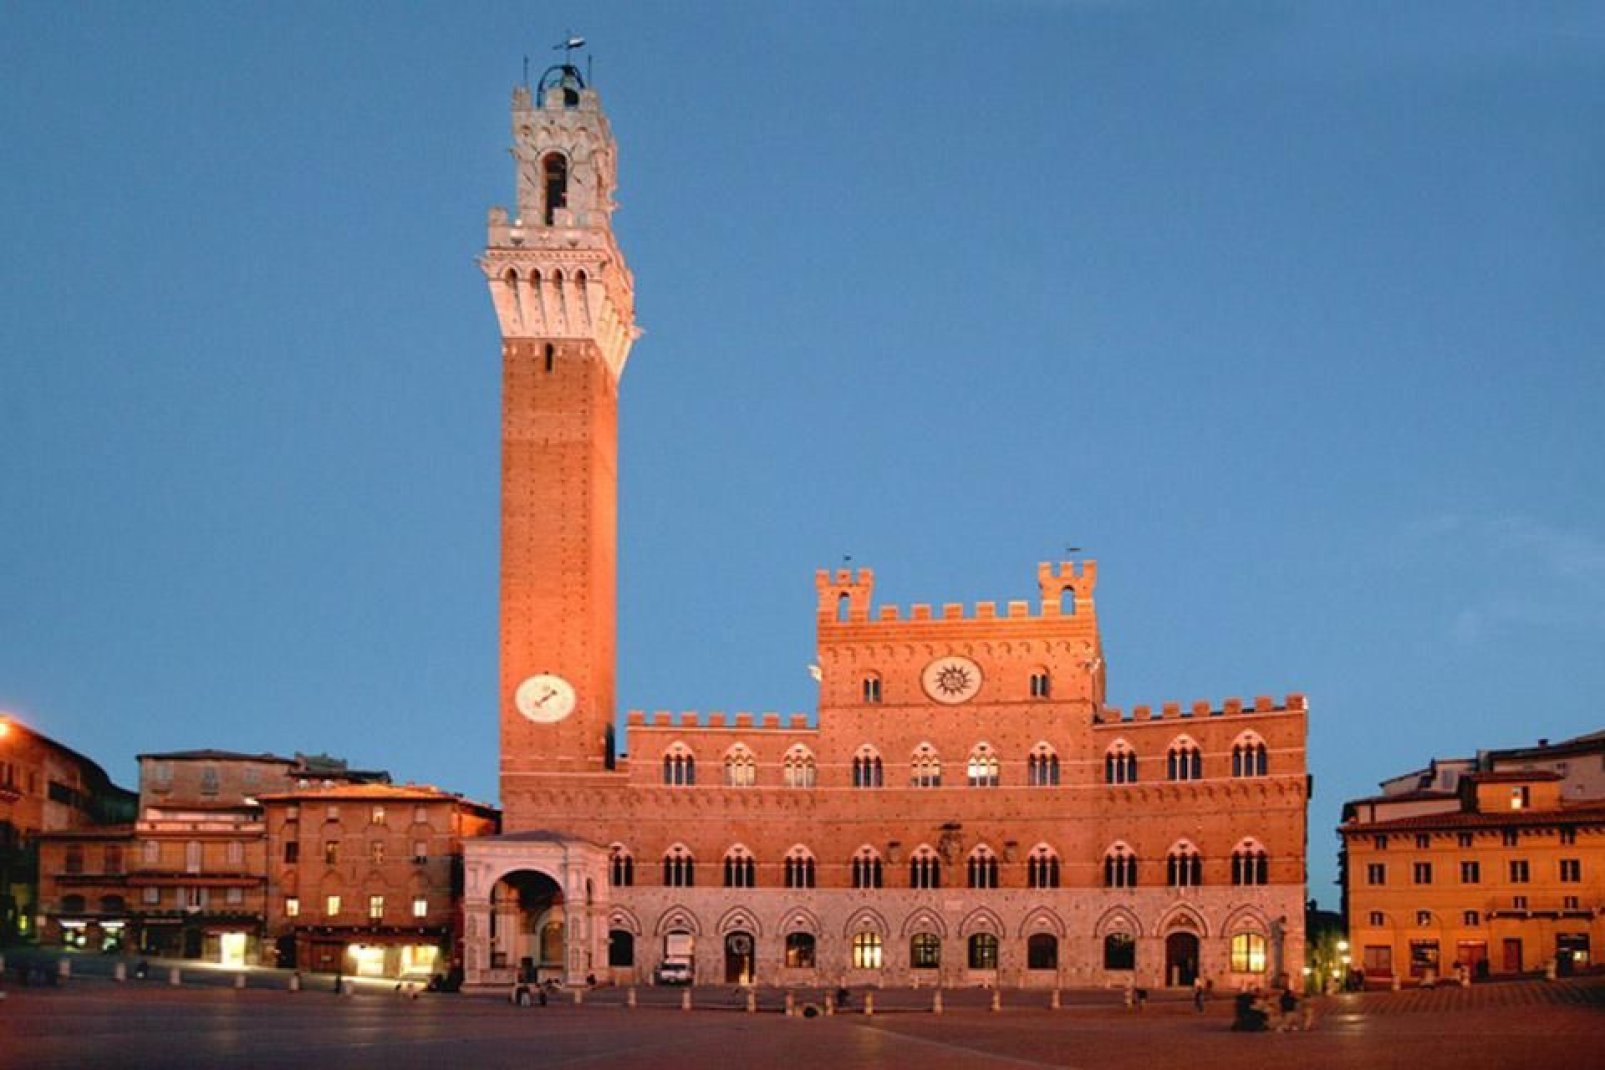 Eine schöne Panoramaansicht des Piazza del Campo. Im Hintergrund der Palazzo Publico mit dem Torre del Mangia.